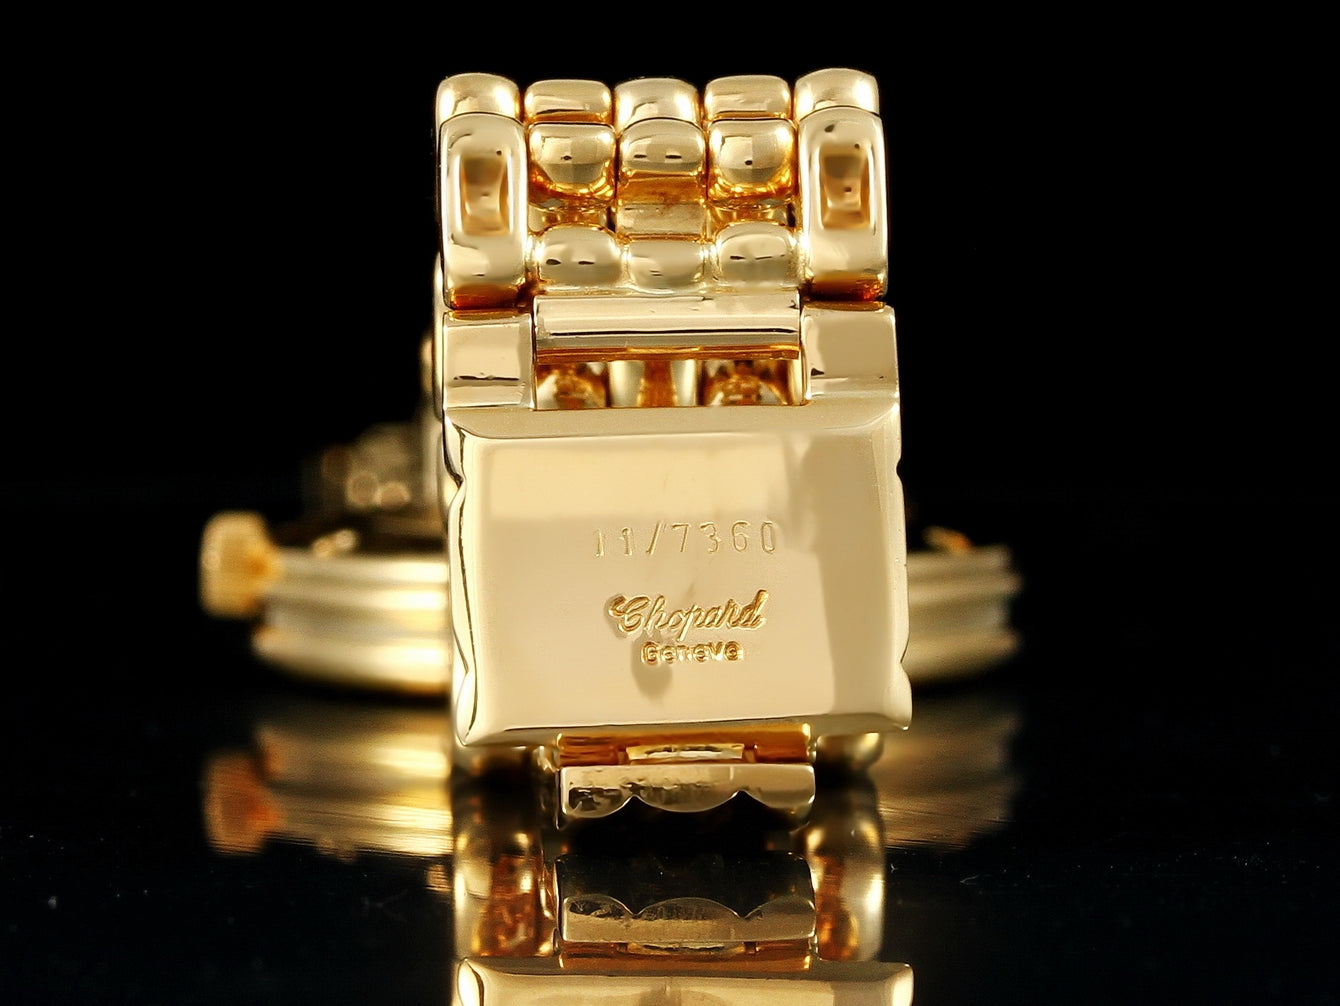 Chopard Classic Zifferblatt mit 12 Diamanten, Gelbgold, 11/7360, 117360